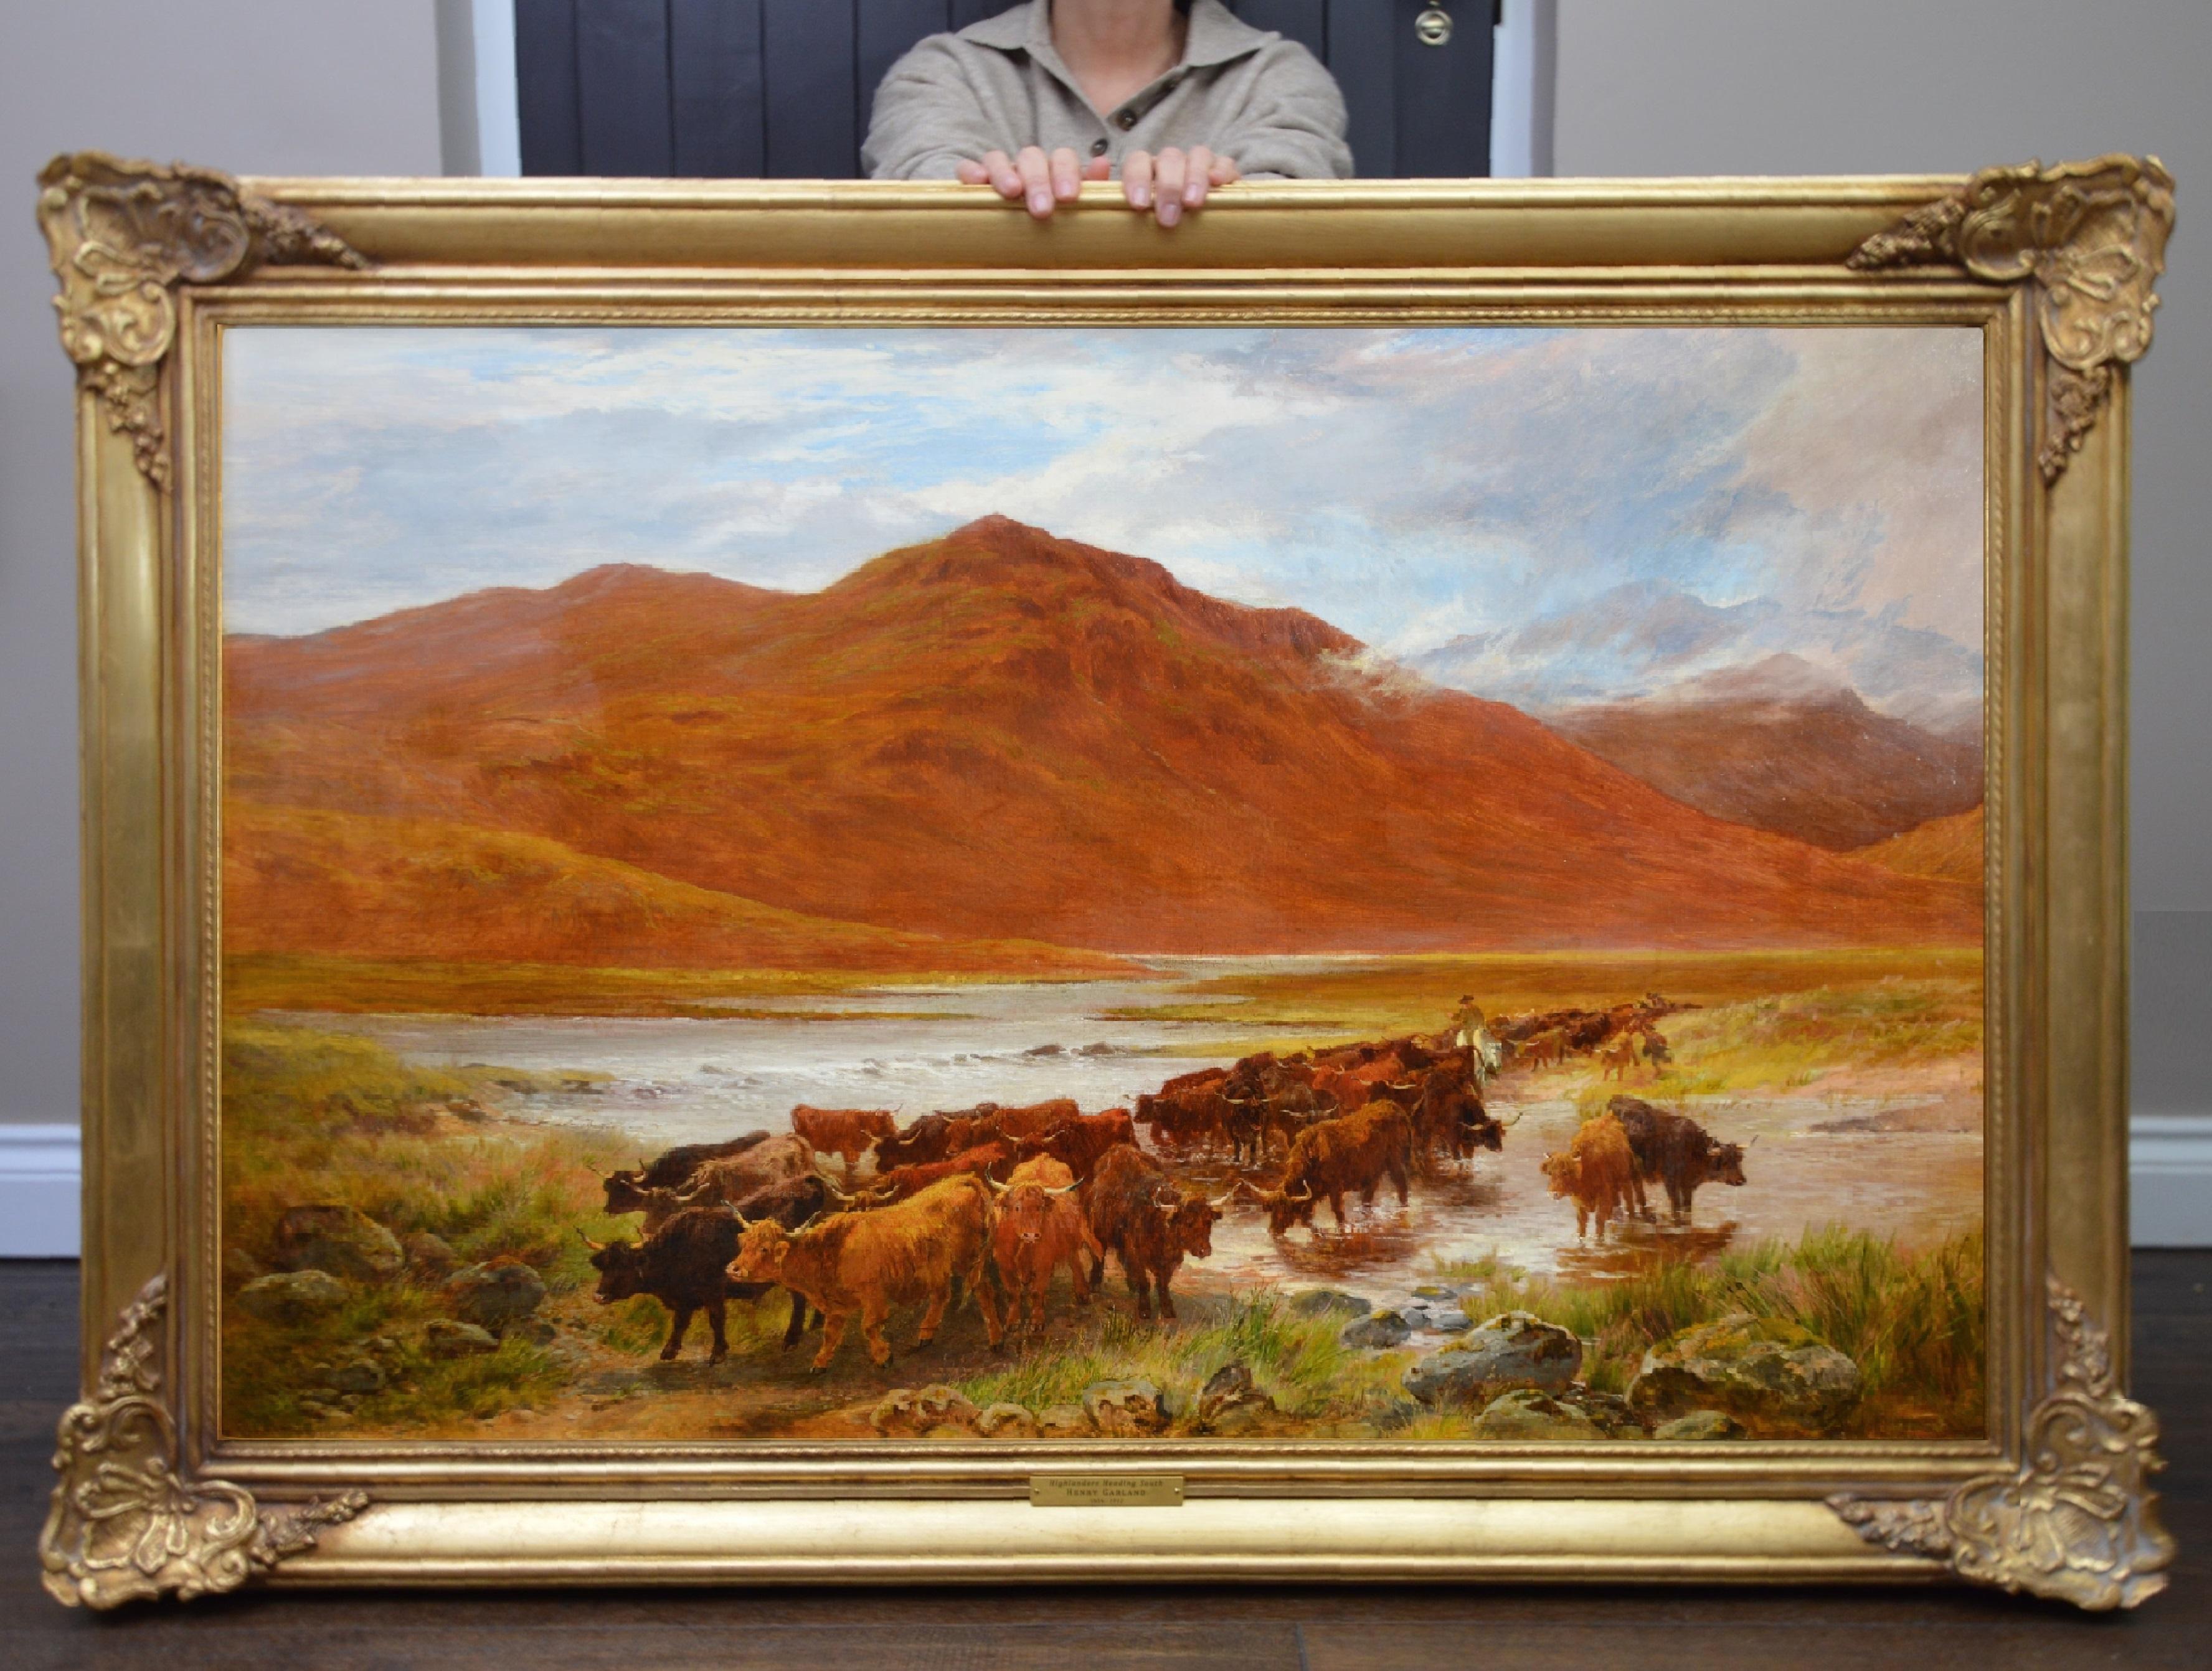 Highlanders Heading South - Grande peinture à l'huile des Highlands écossaises du 19e siècle - École anglaise Painting par Henry Garland